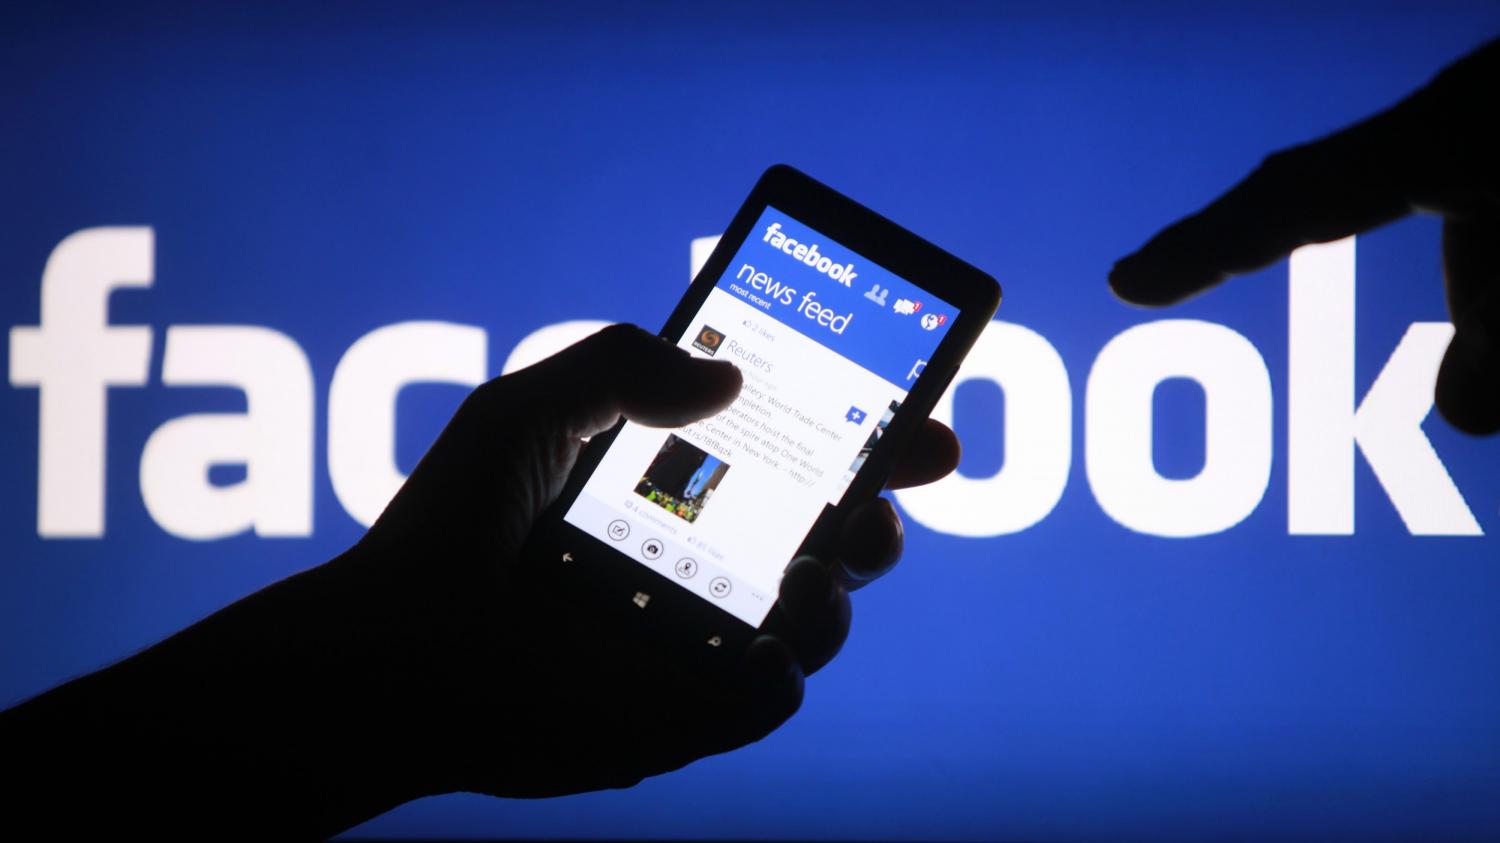 LIDER MUNDIAL. Facebook lleva la delantera por número y penetración en el mercado. FOTO TOMADA DE ELPUBLICISTA.ES